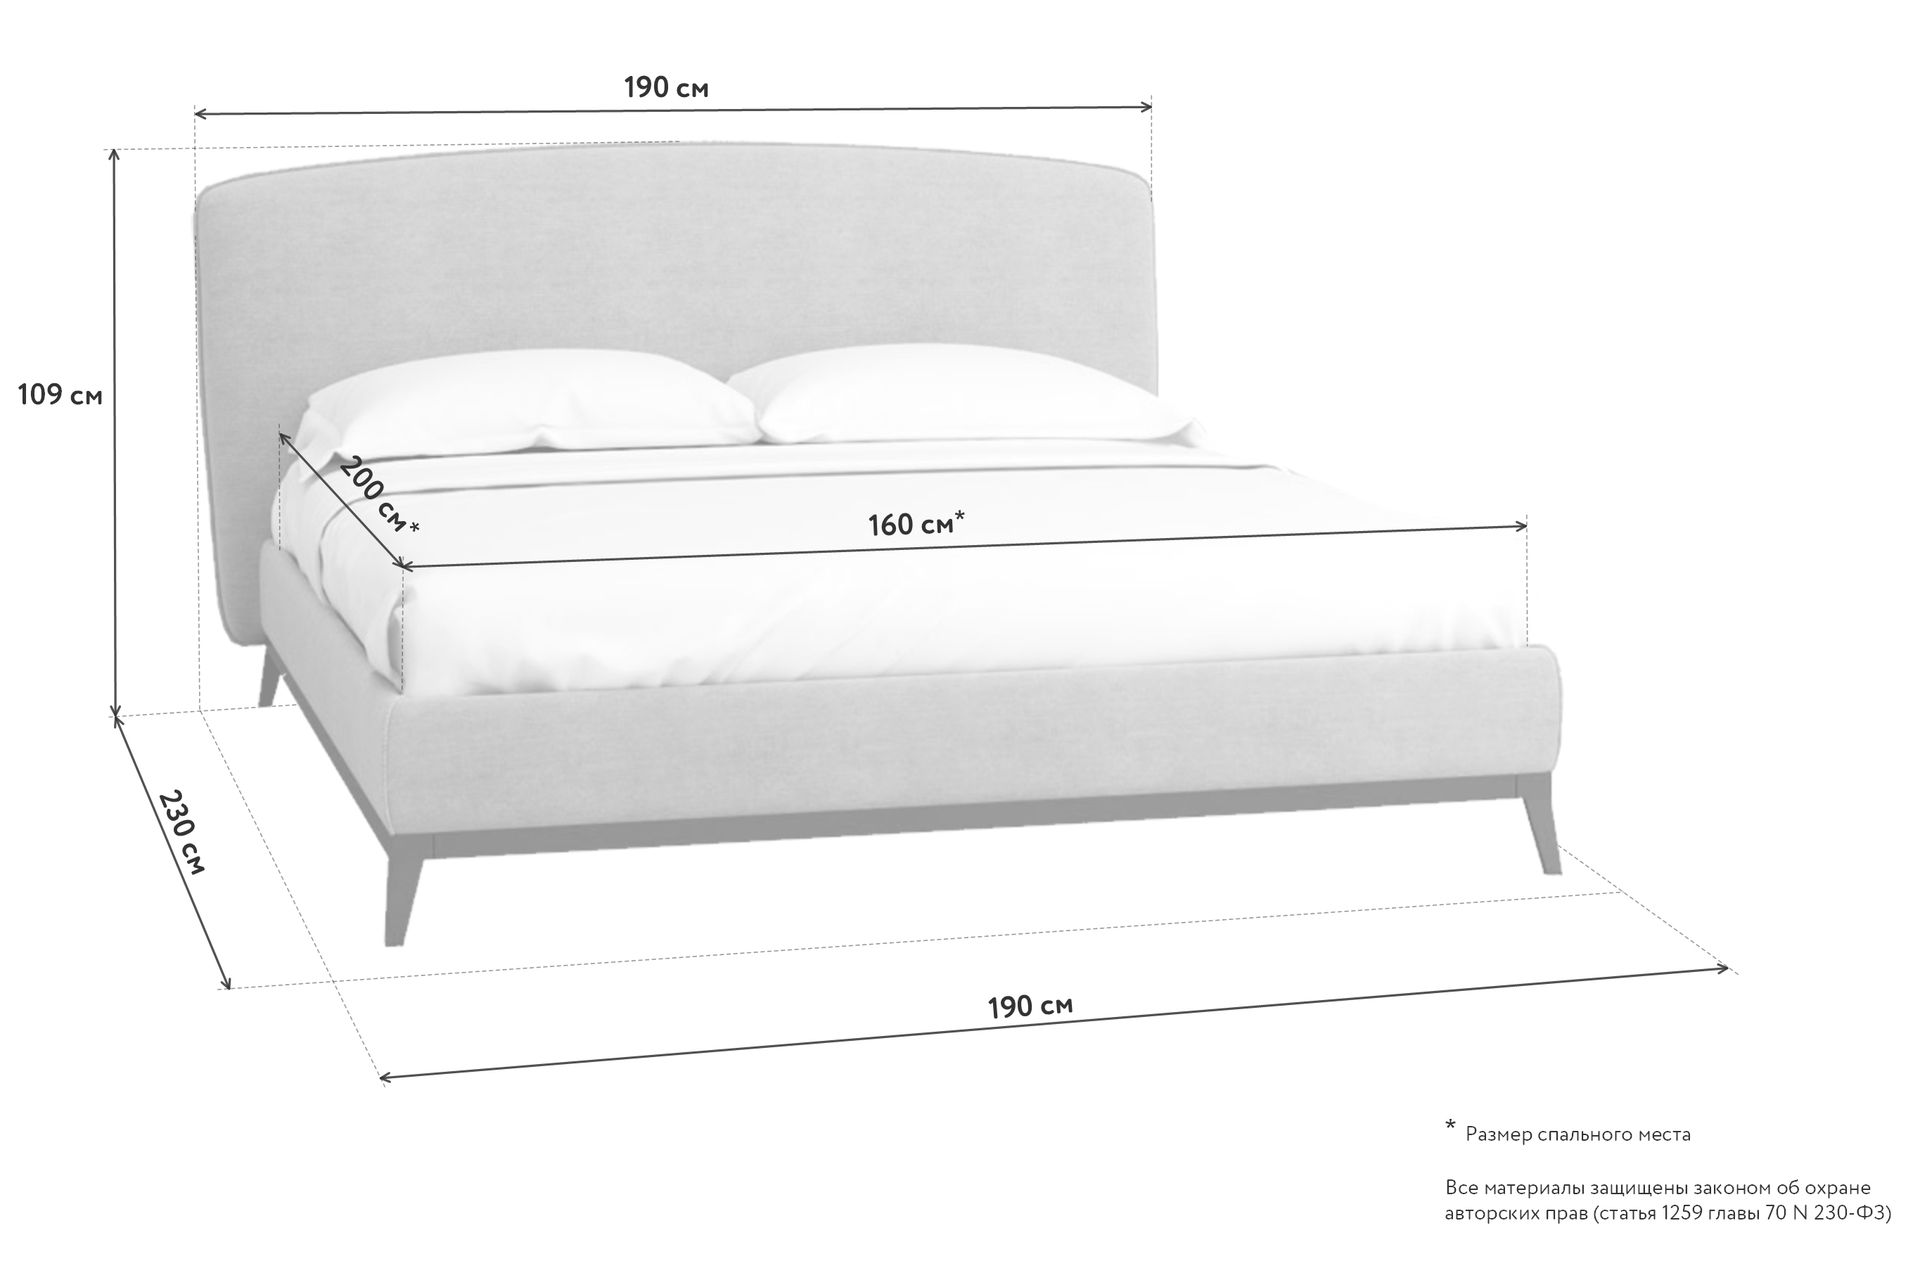 Кровать 190 см в длину